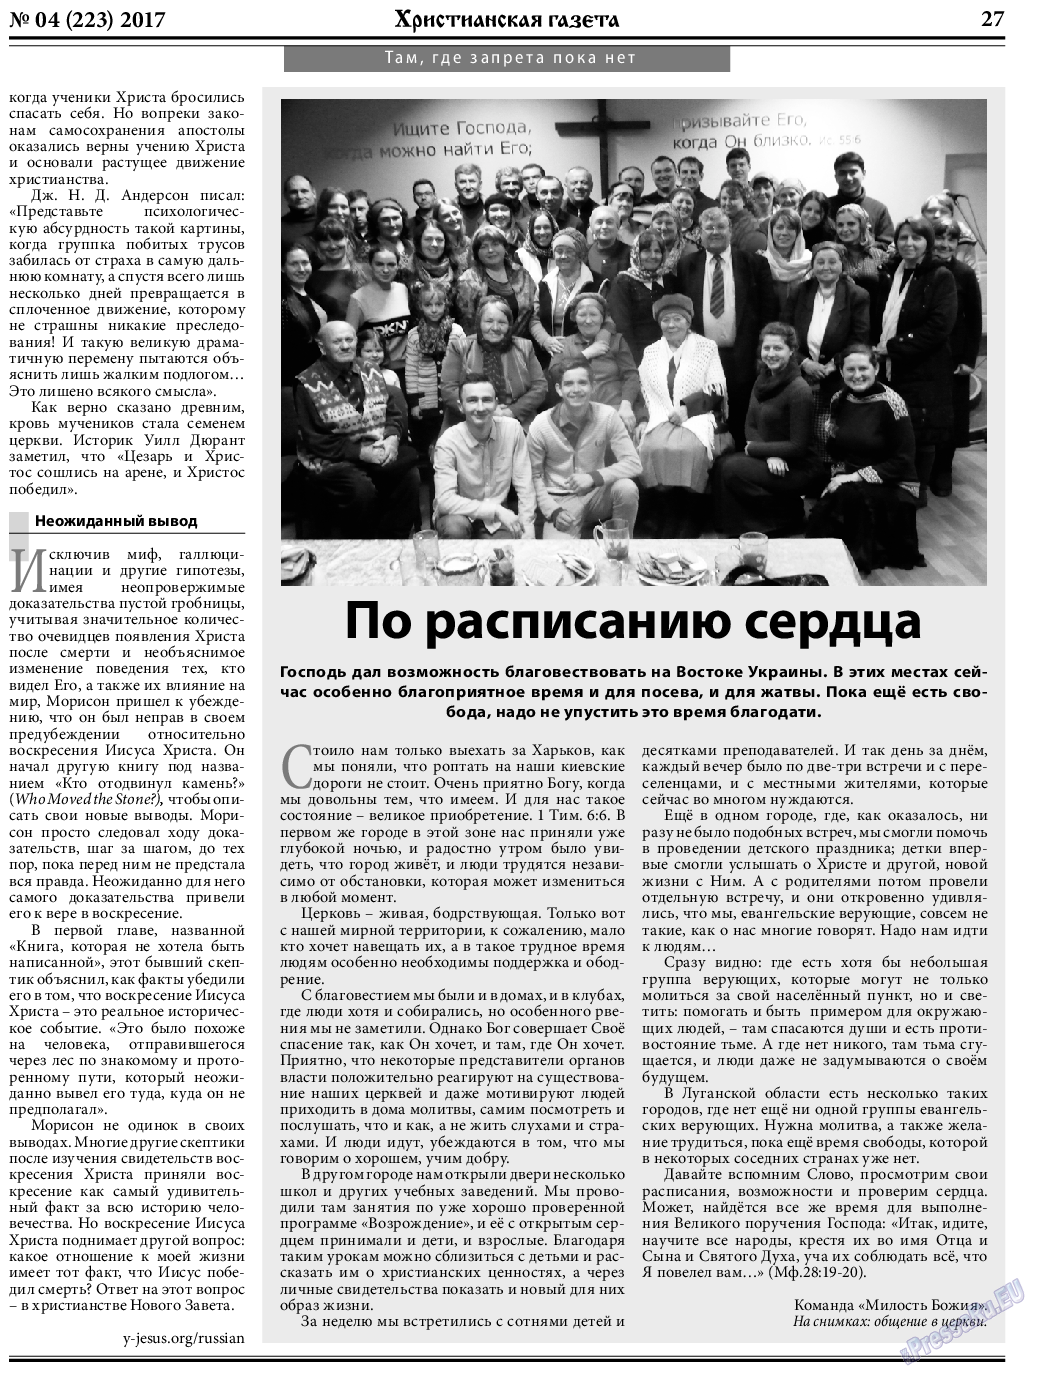 Христианская газета, газета. 2017 №4 стр.27